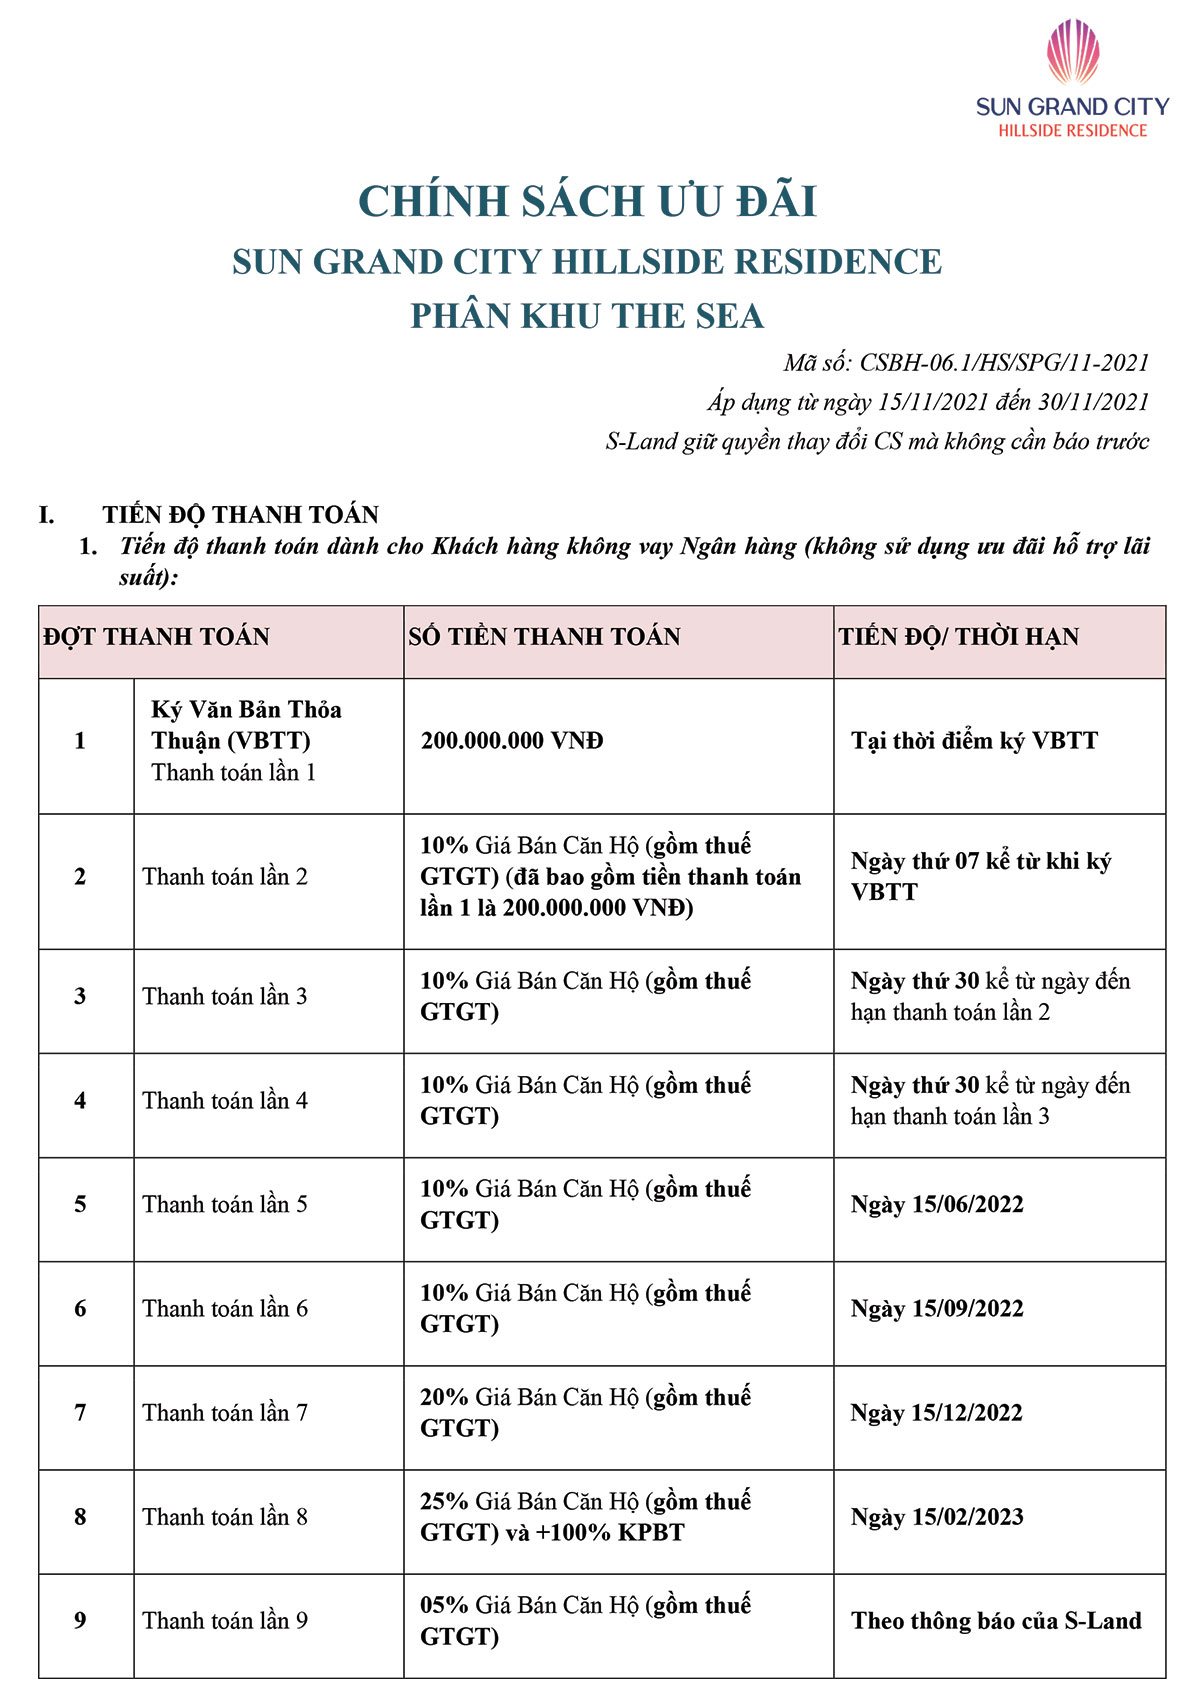 Chính sách bán hàng phân khu The Sea tháng 11/2021.